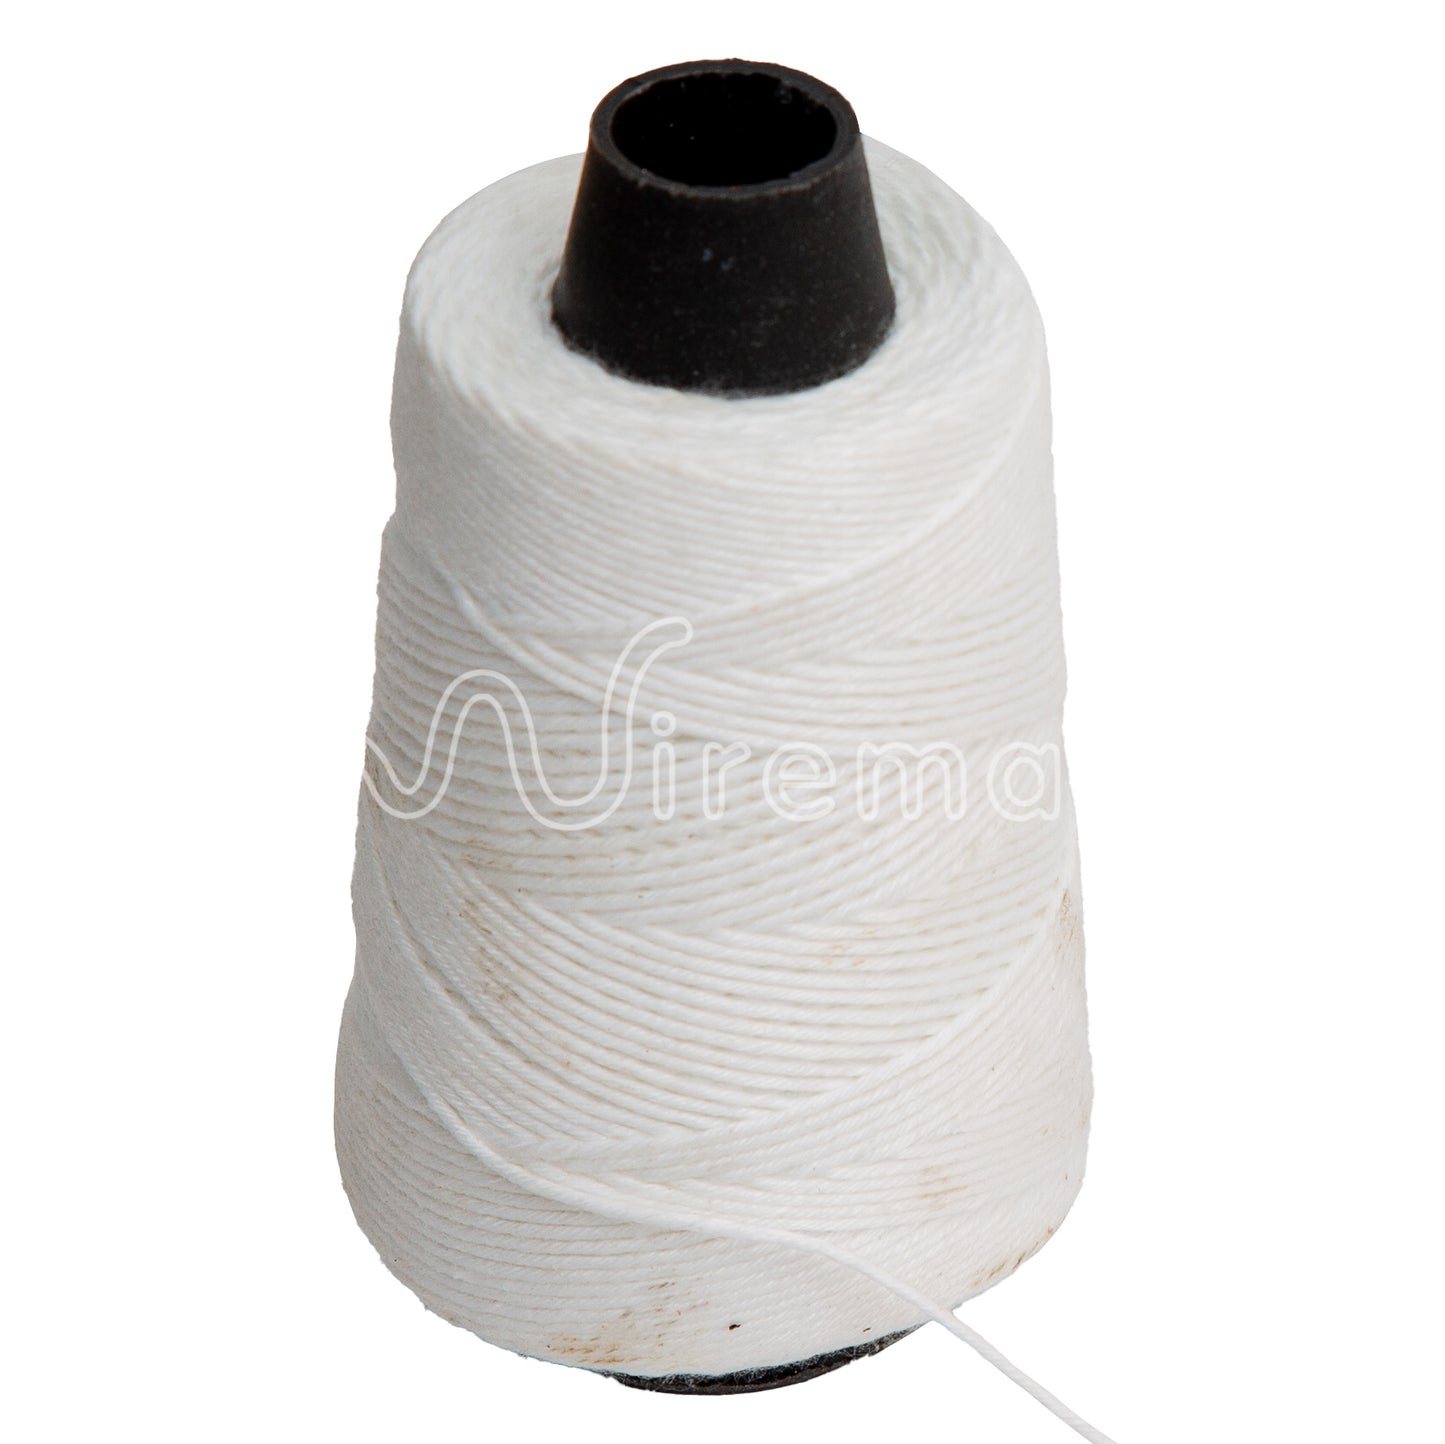 Winding Thread (Price Per Packet - 6 Reels)